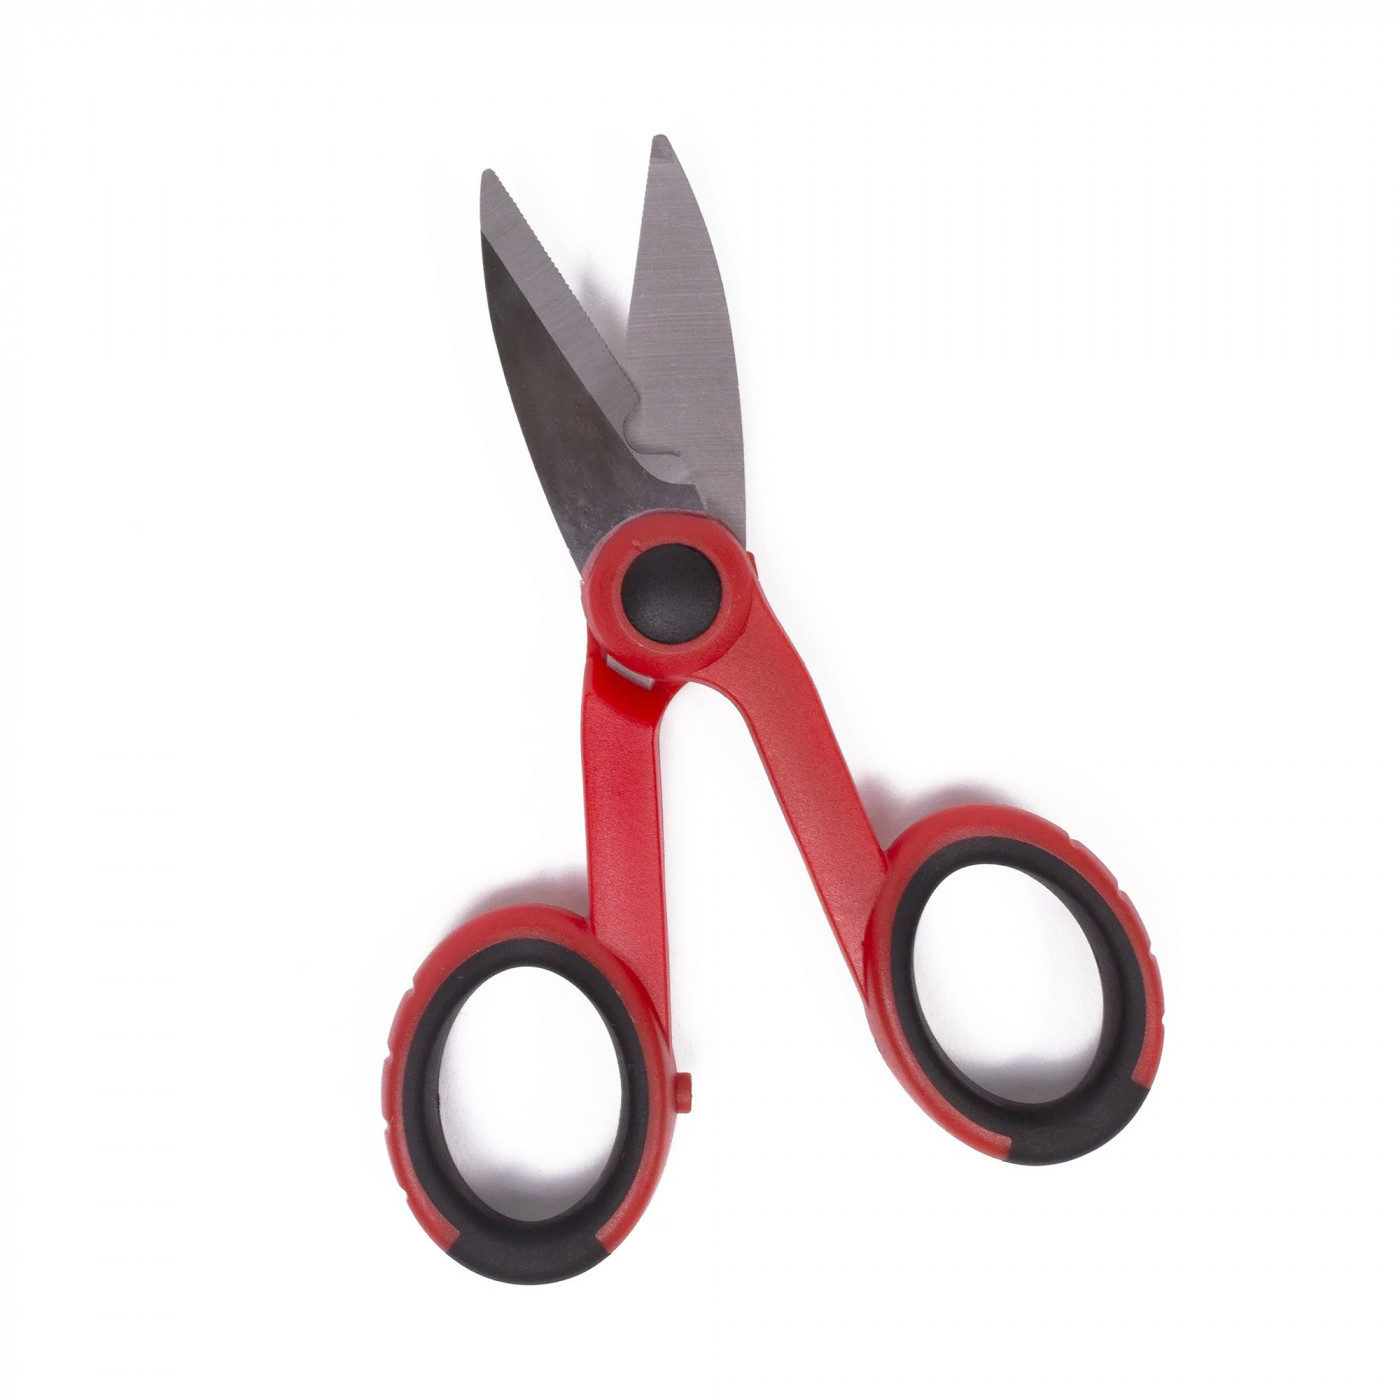 Universal all-purpose cutter (scissors, 14 cm)